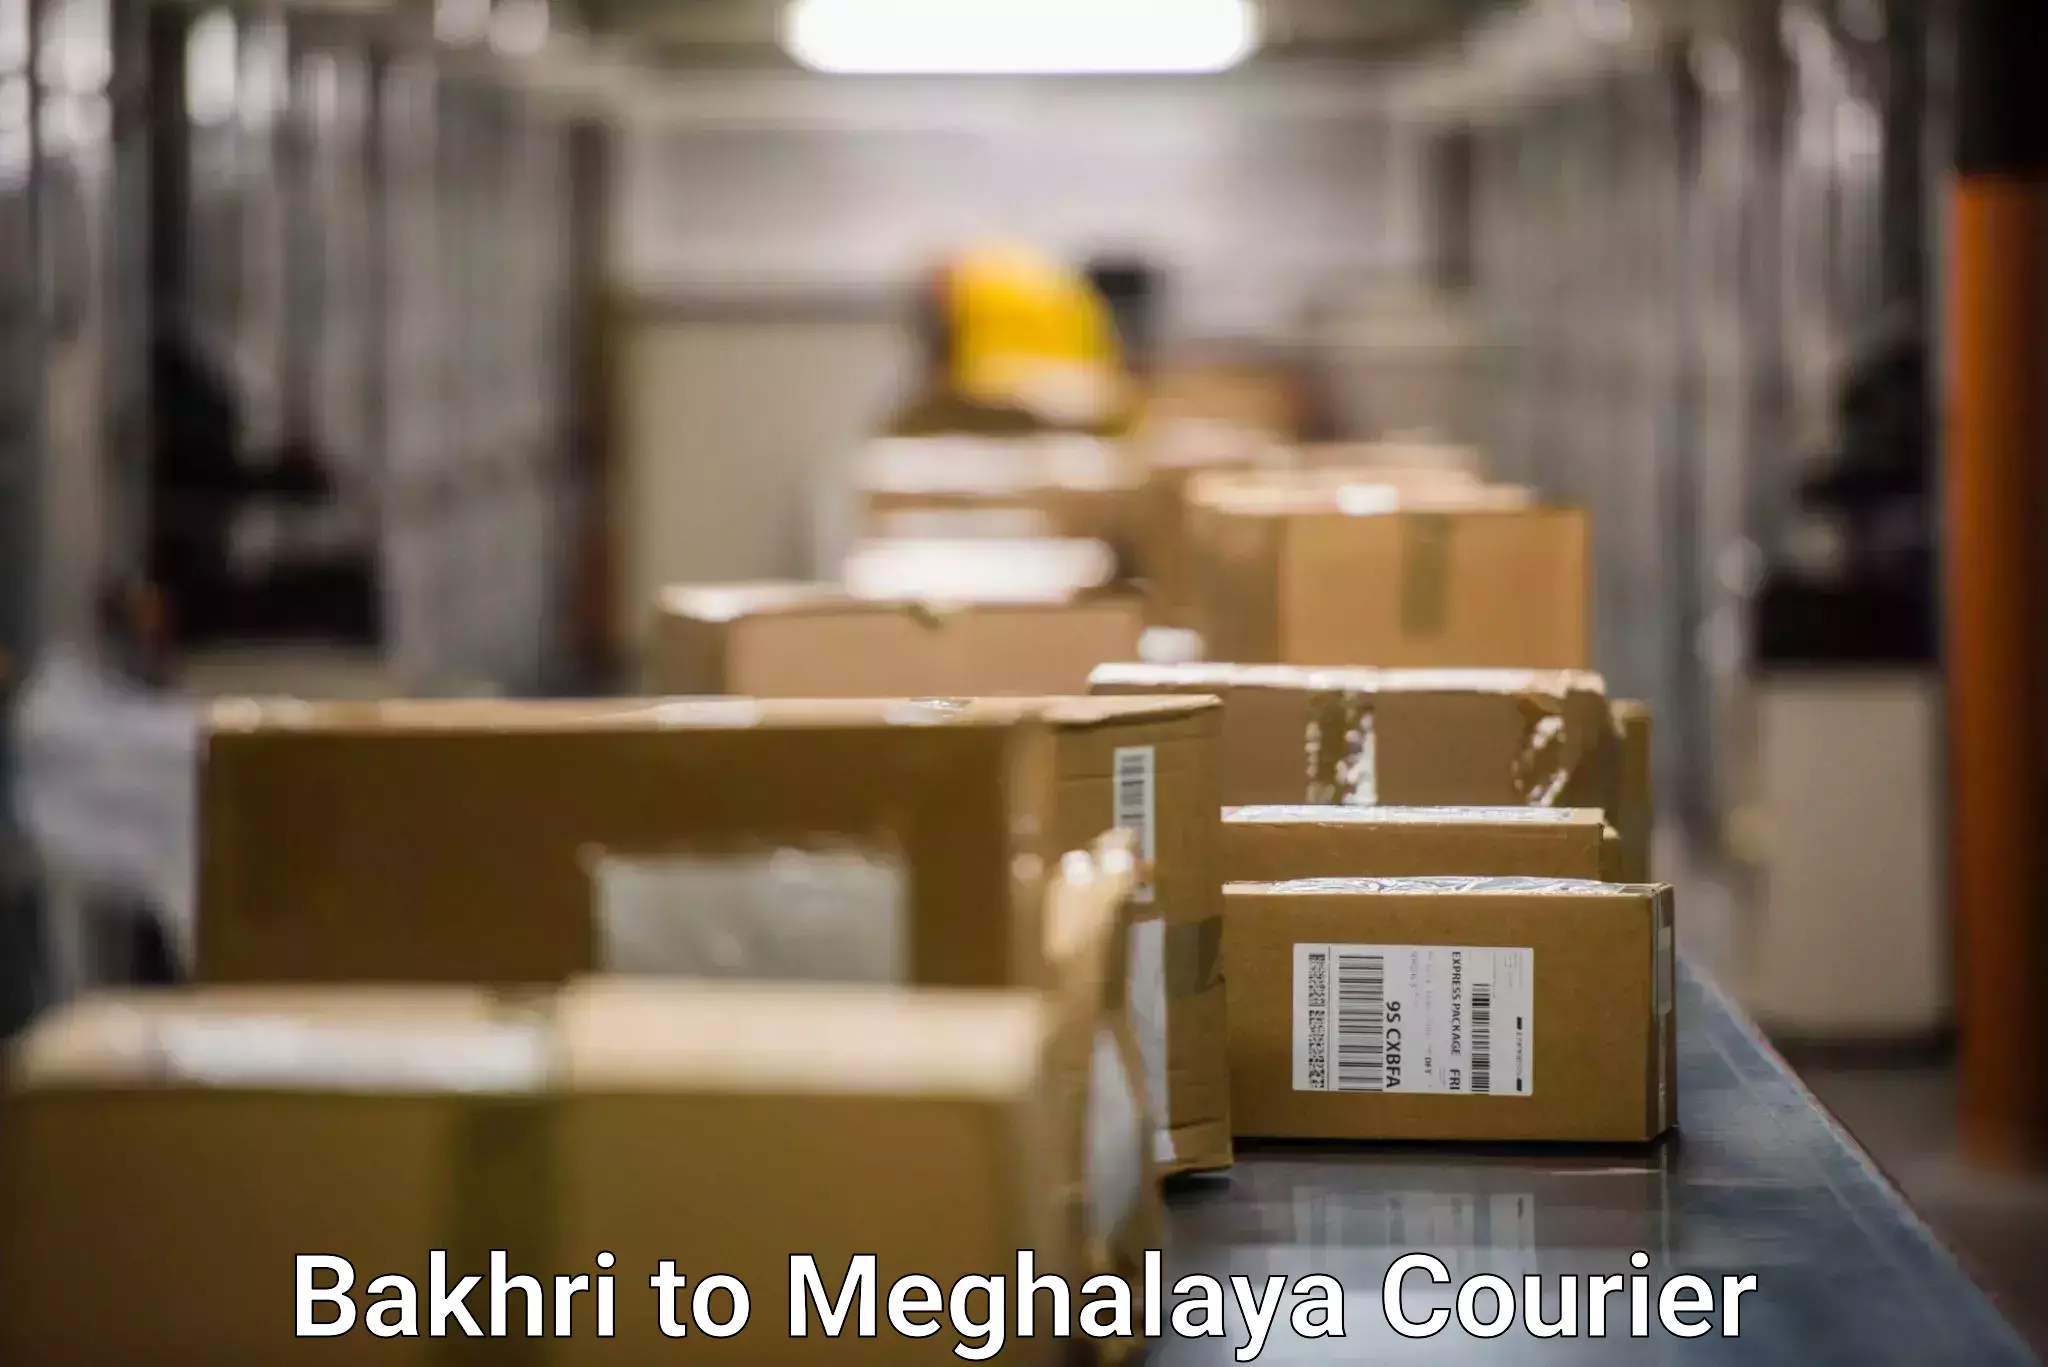 Logistics efficiency in Bakhri to Dkhiah West